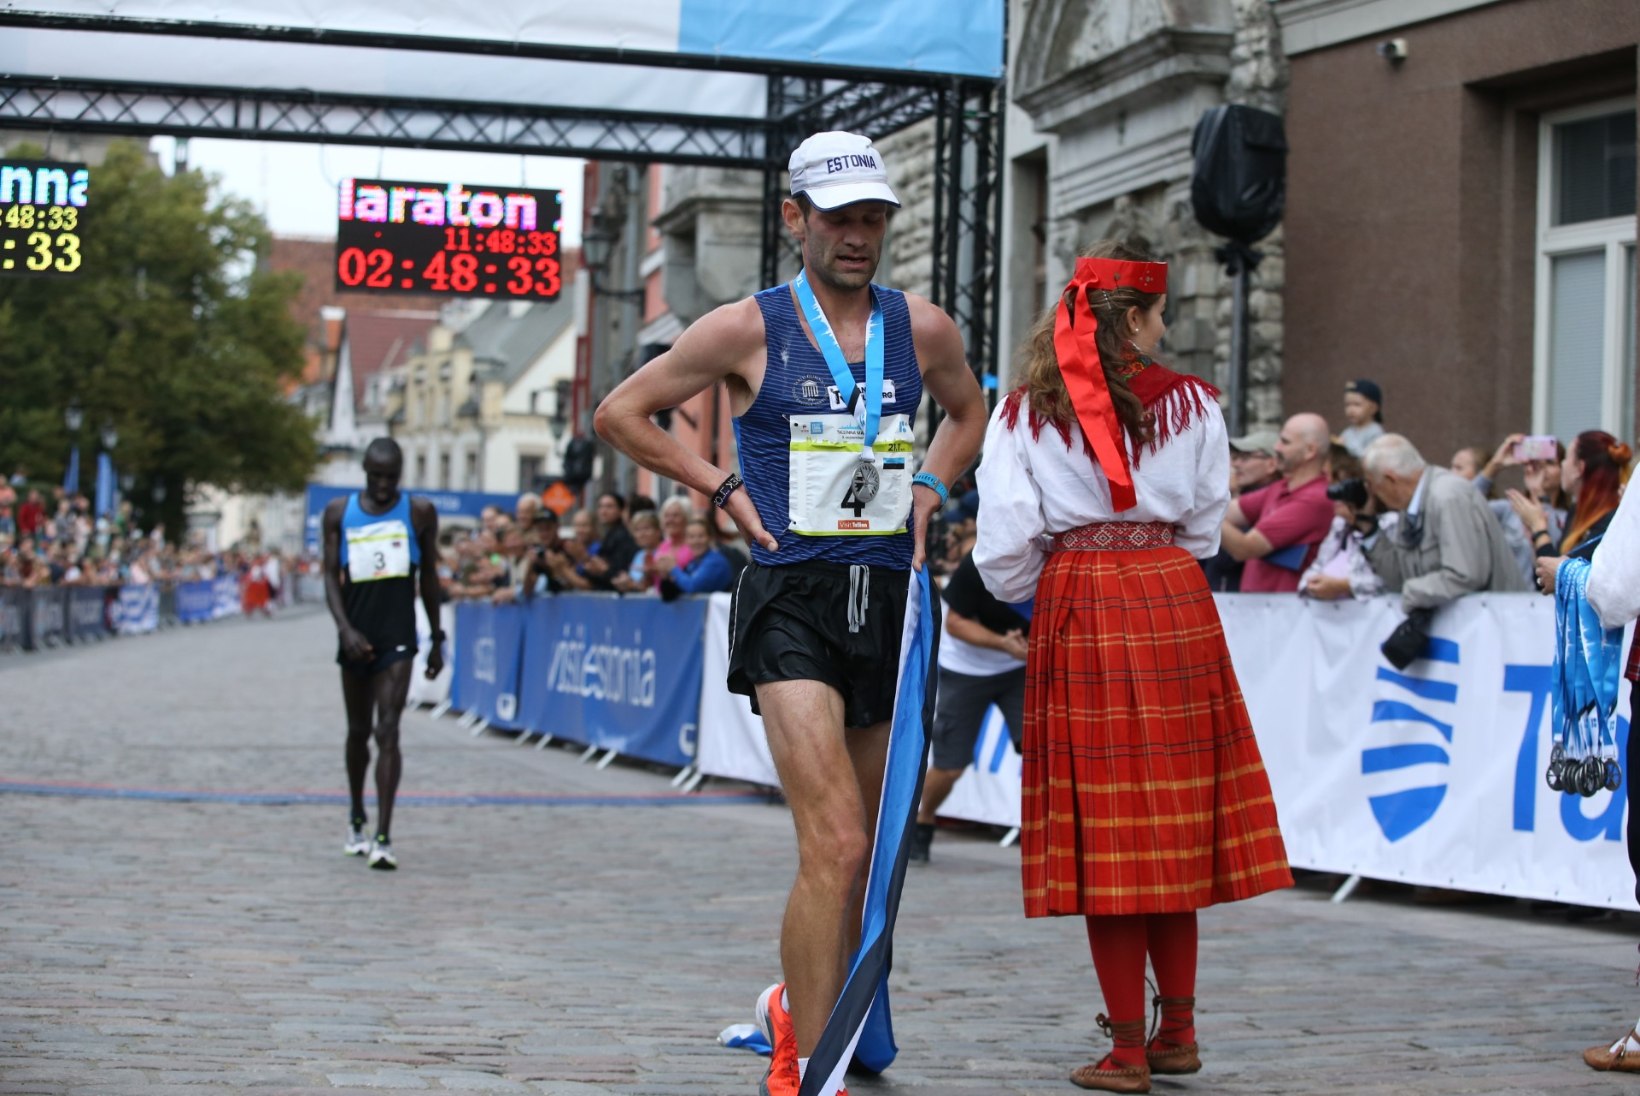 Tallinna Maratoni esikohad jäid koju, Fosti sai ajaloolise võidu